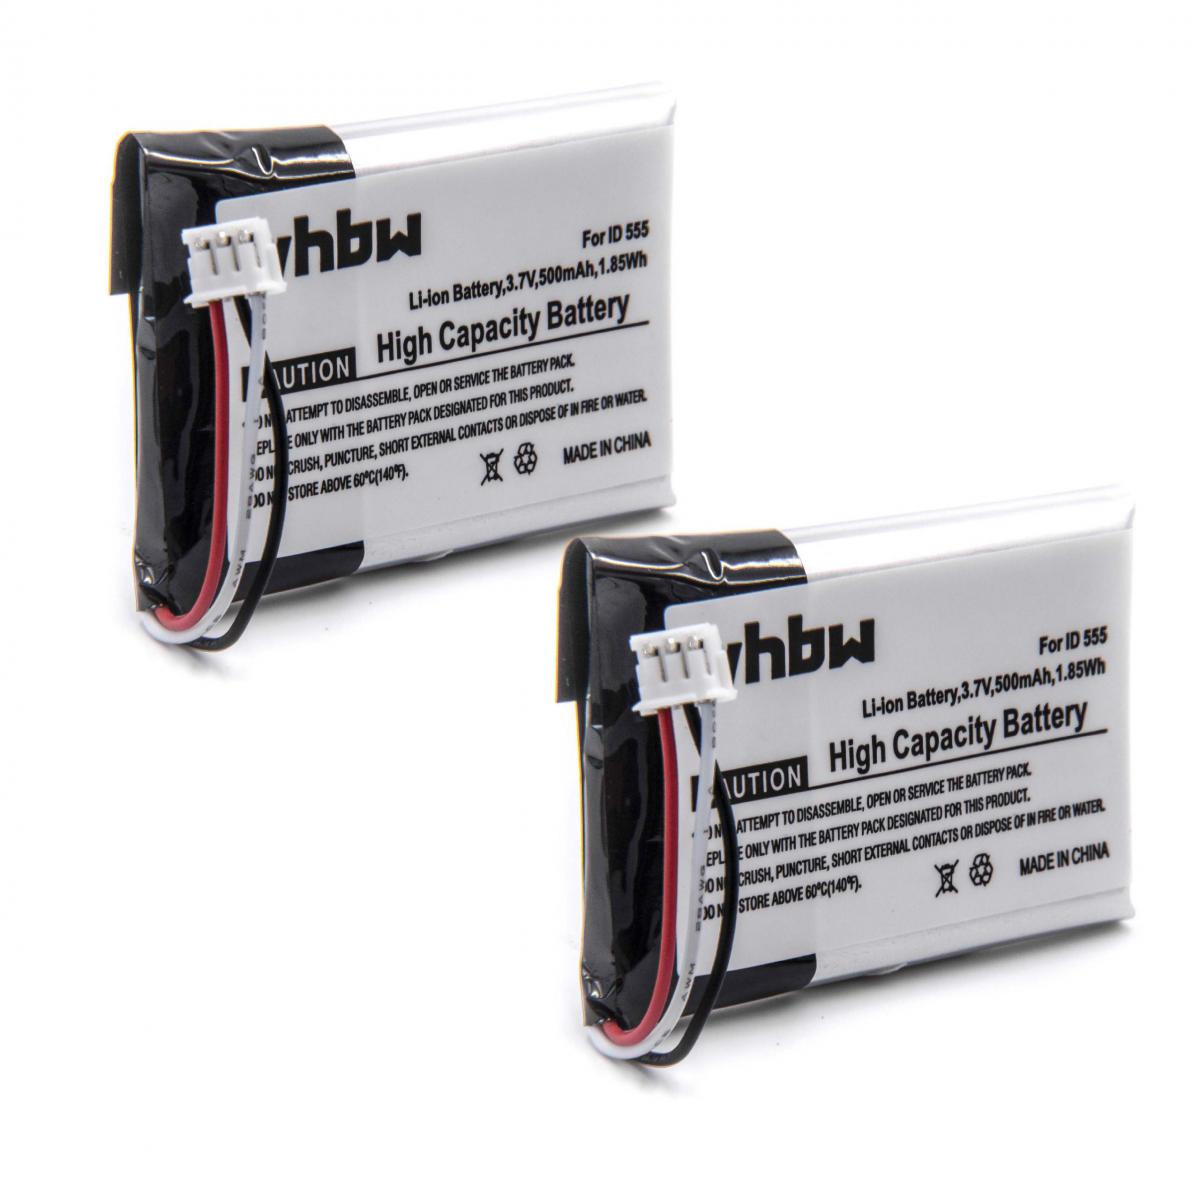 Vhbw - Set de 2 batteries vhbw 500mAh (3.7V) pour télephone fixe sans fil Swissvoice Iron comme 5-2762, 5-2770, SL-422943. - Batterie téléphone